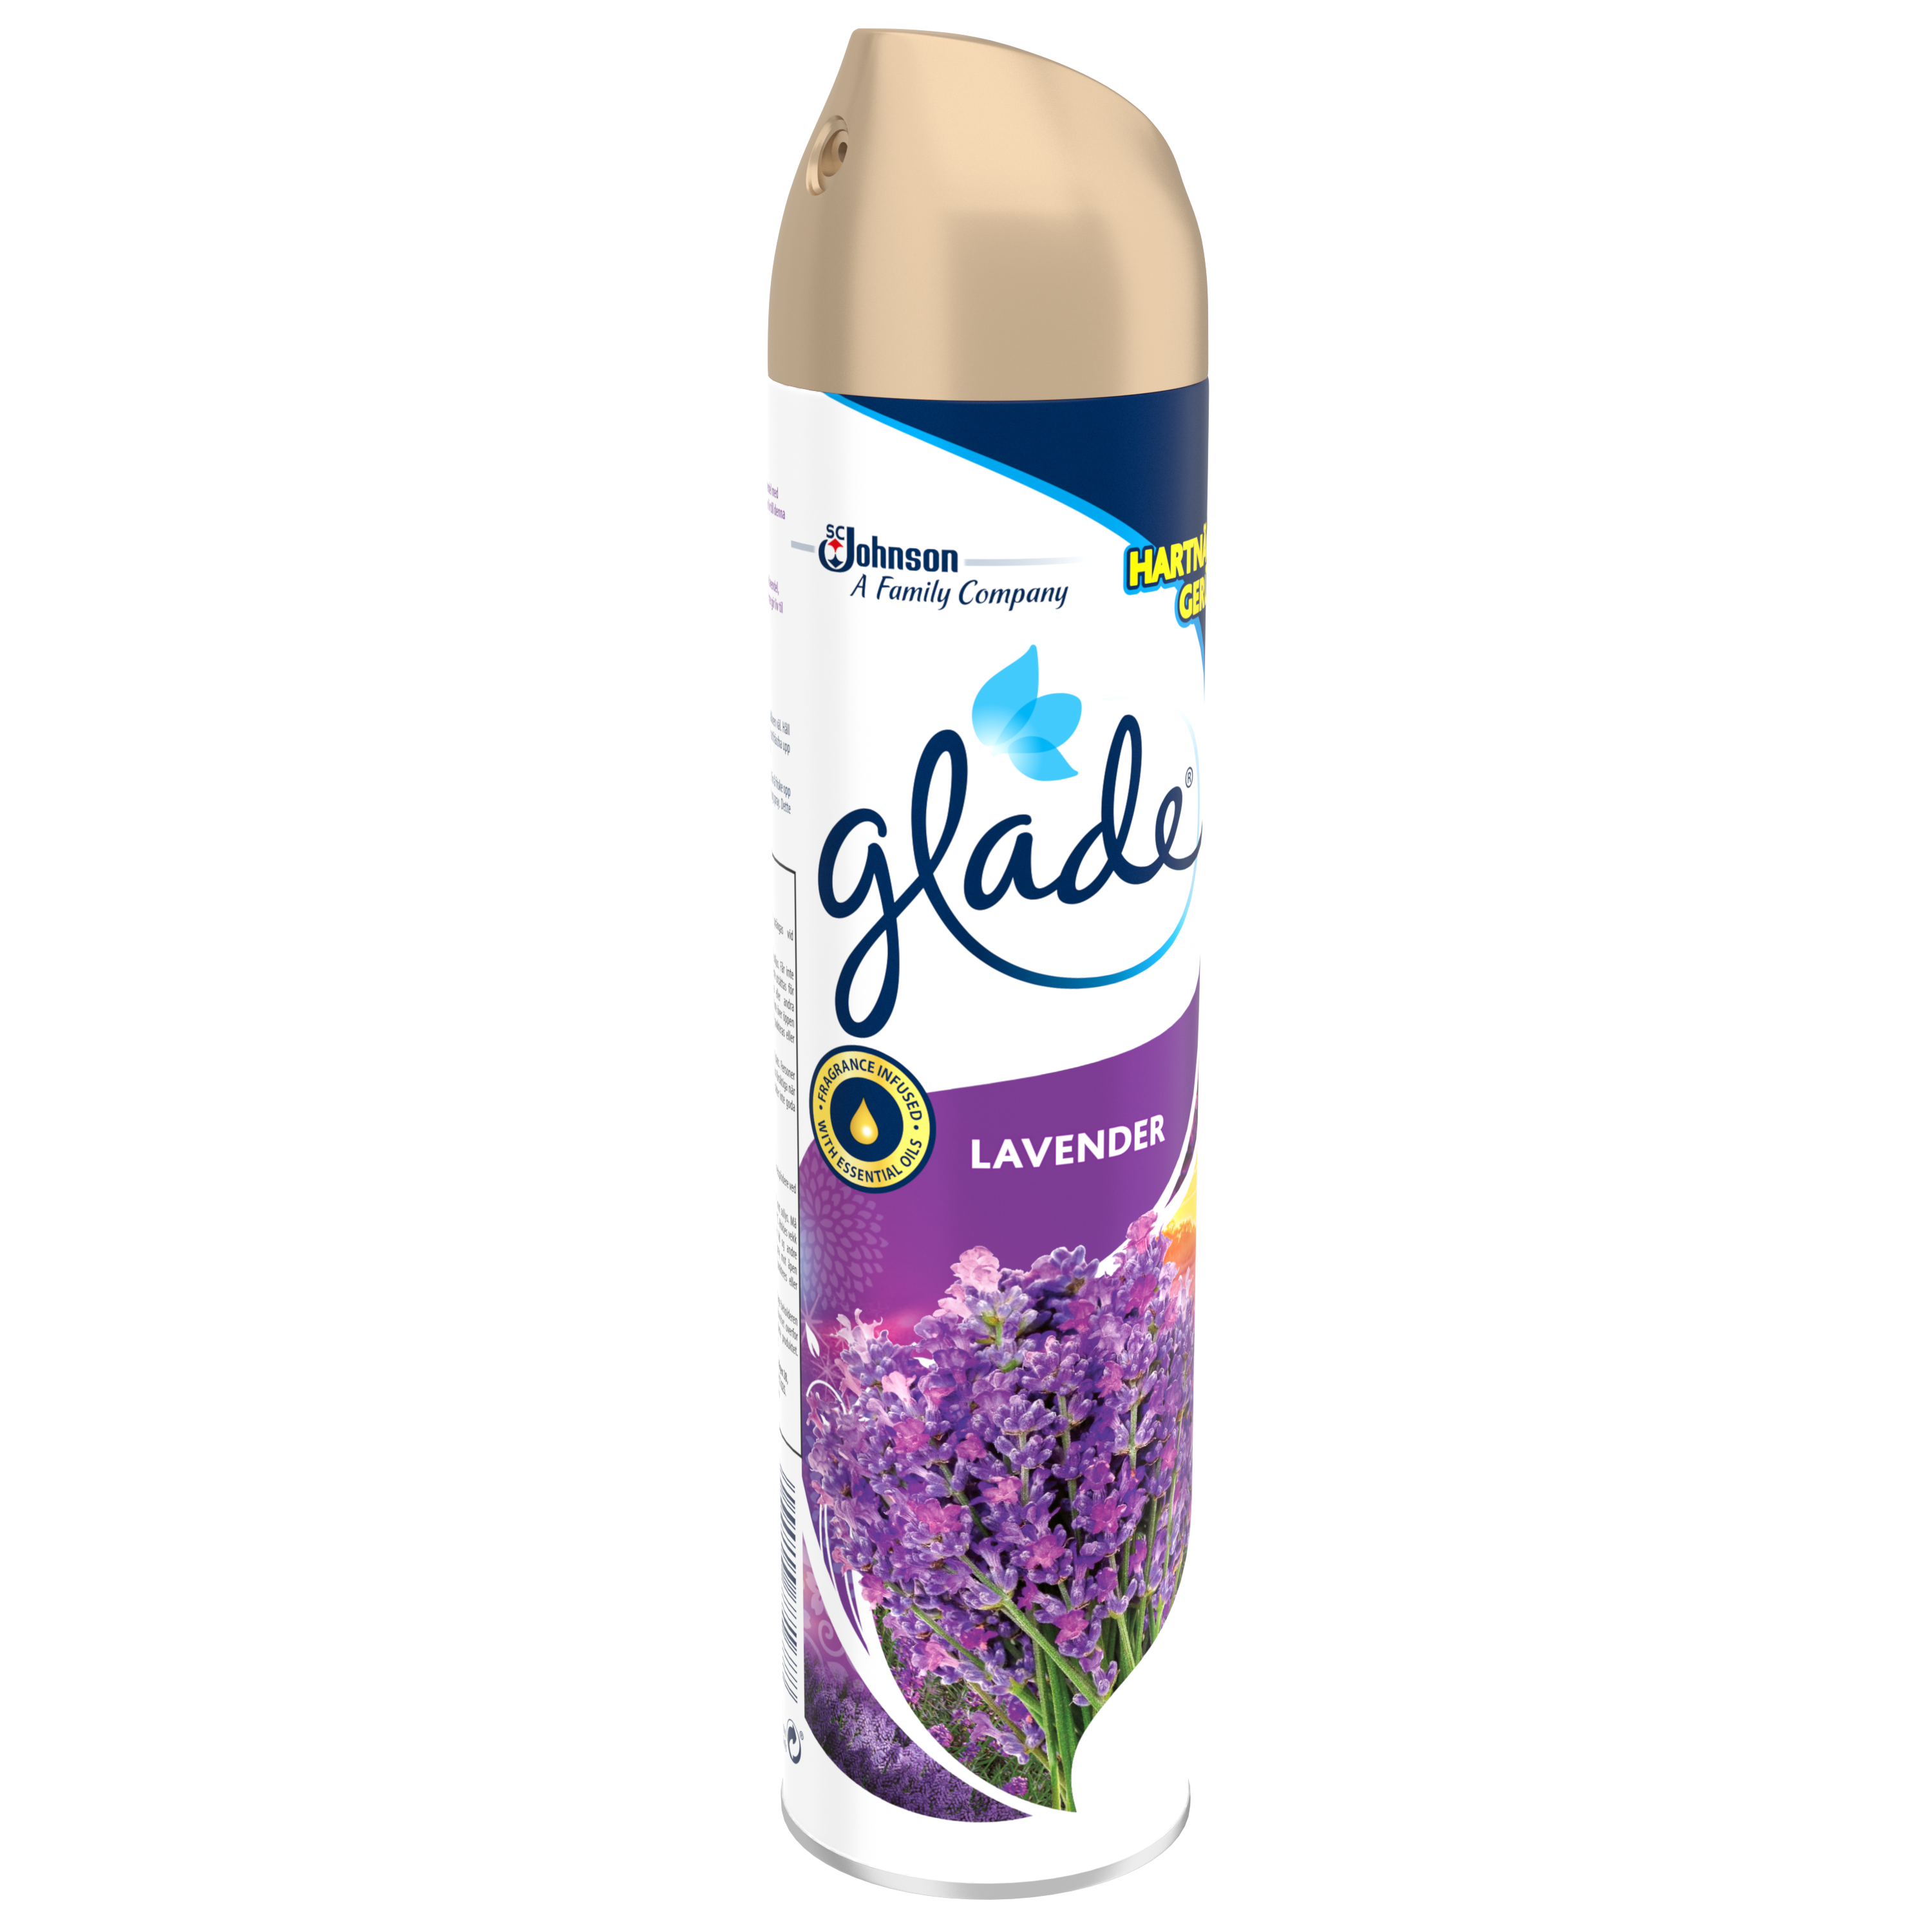 Glade® Aérosol Lavender